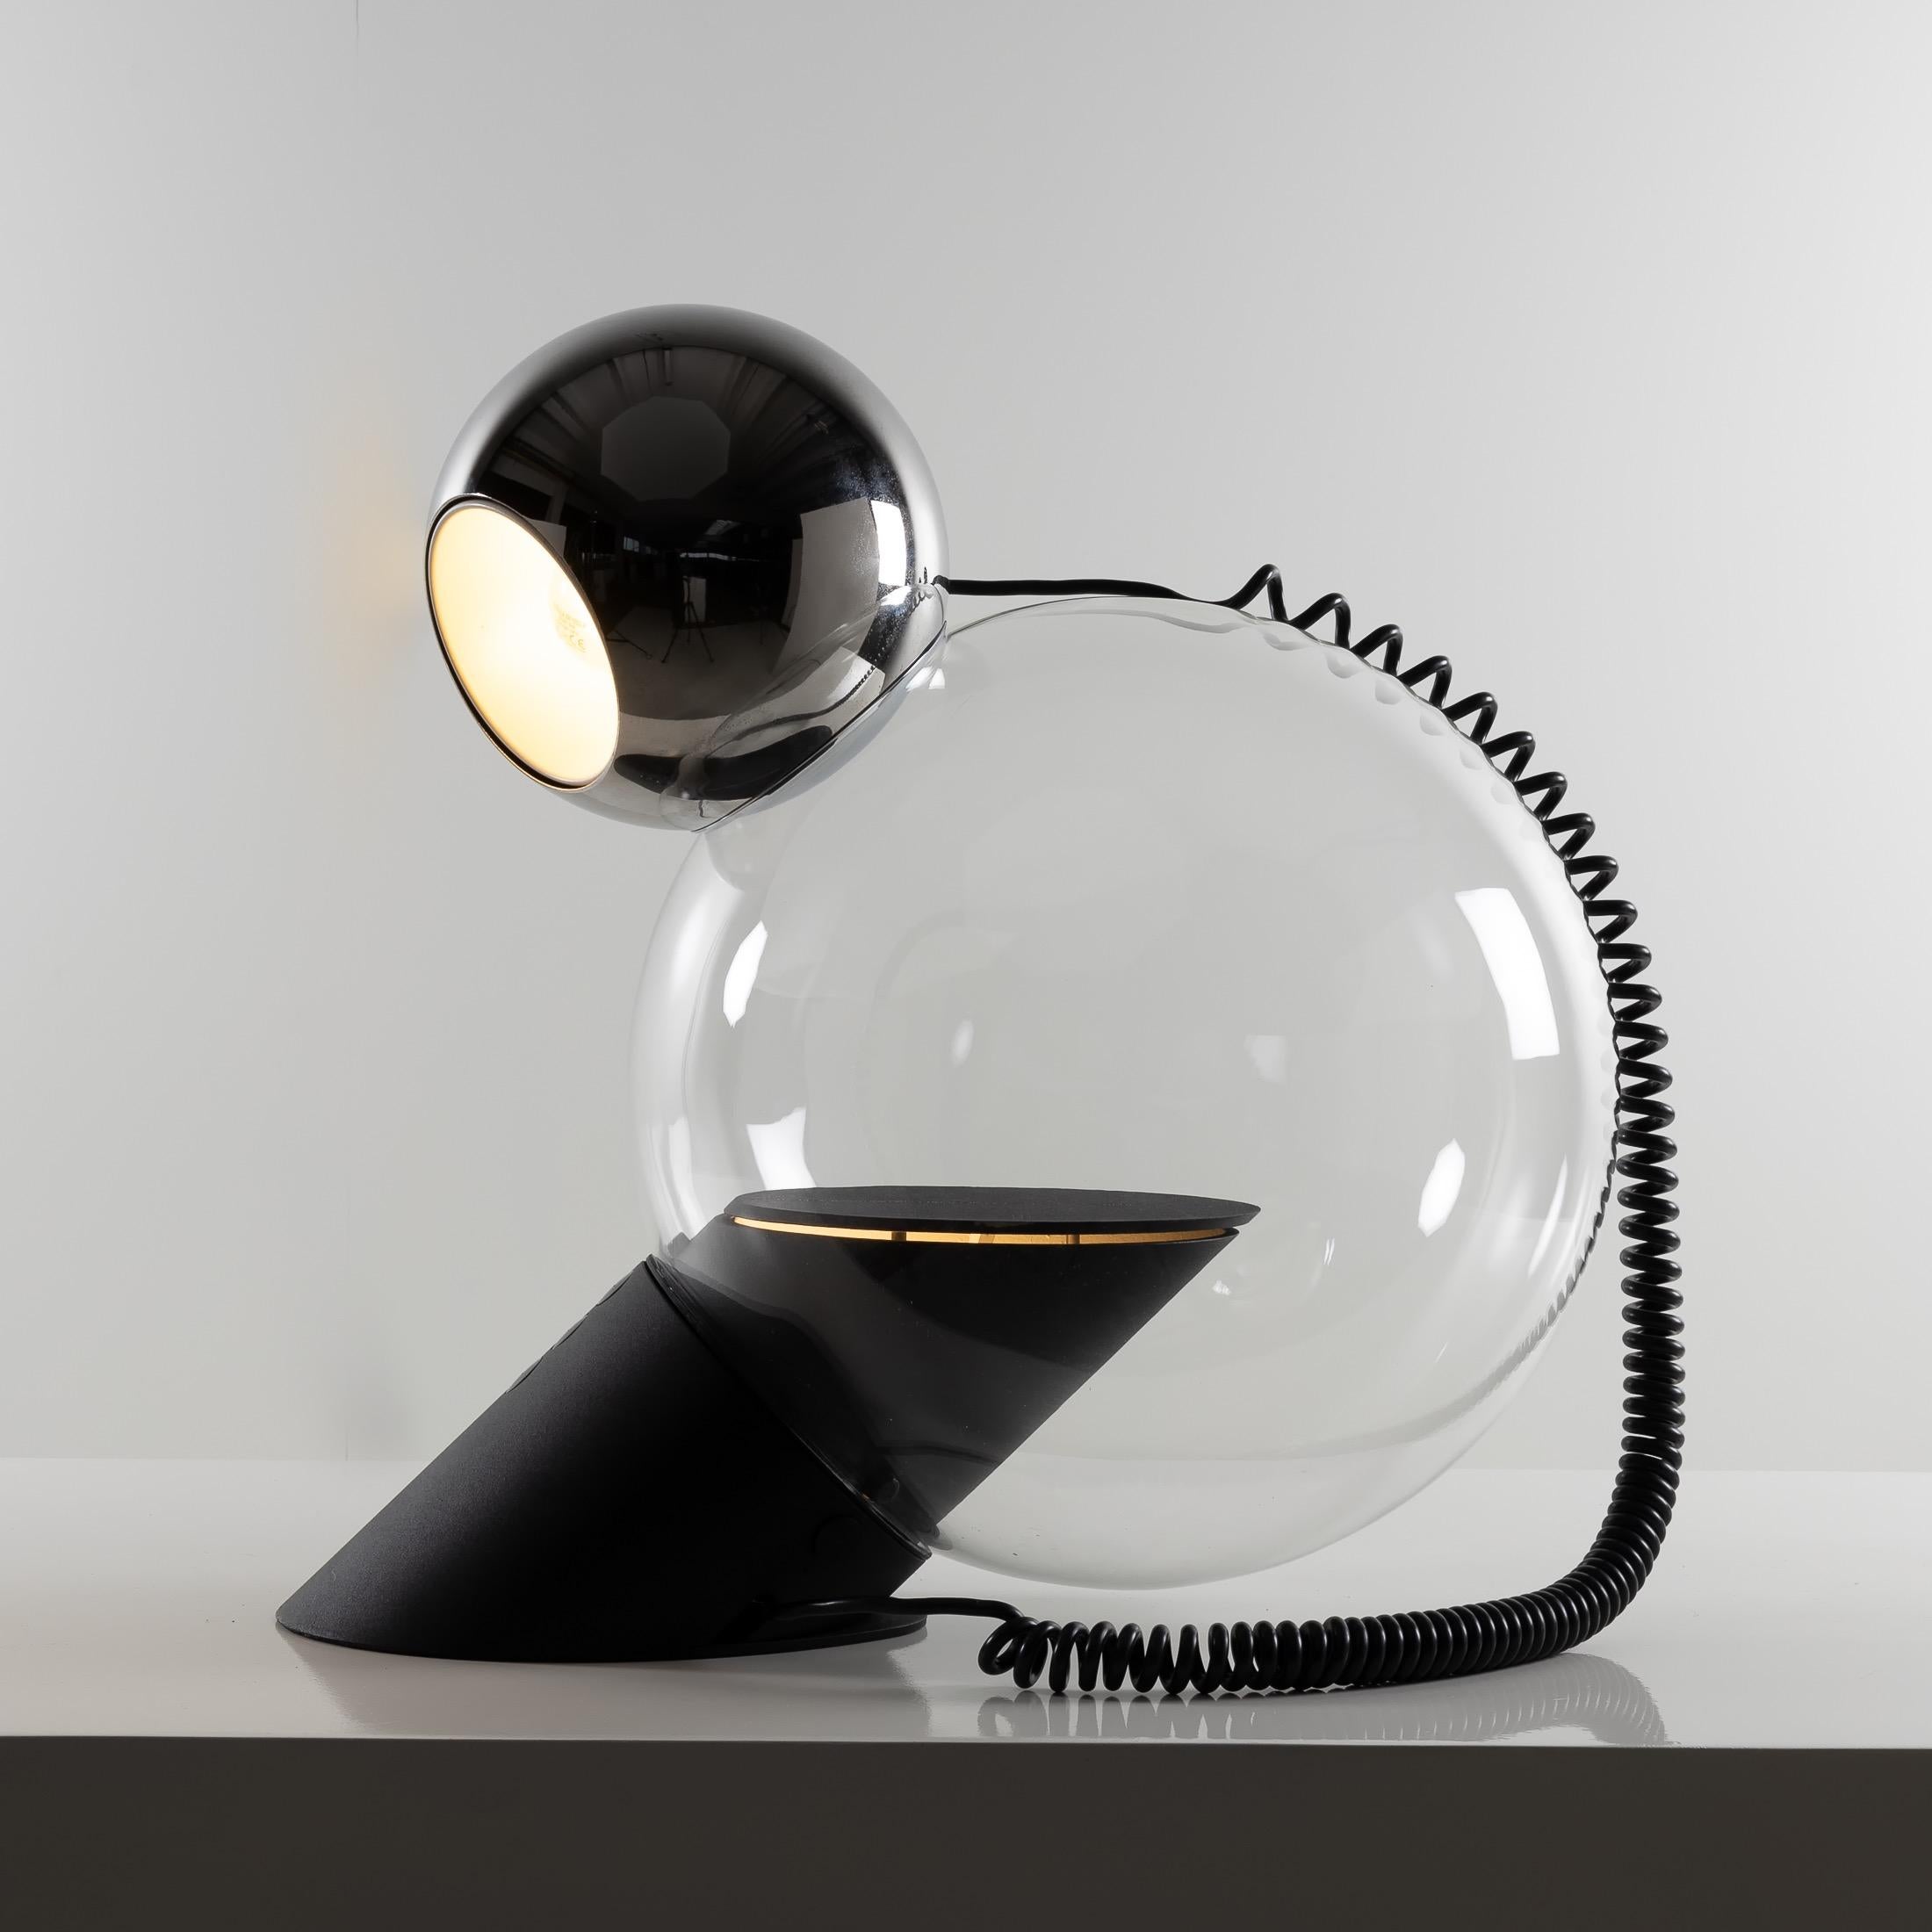 À propos de Gravita, lampe de table par Antonio Macchi Cassia
Lampe de table orientable, Le luminaire en forme de 